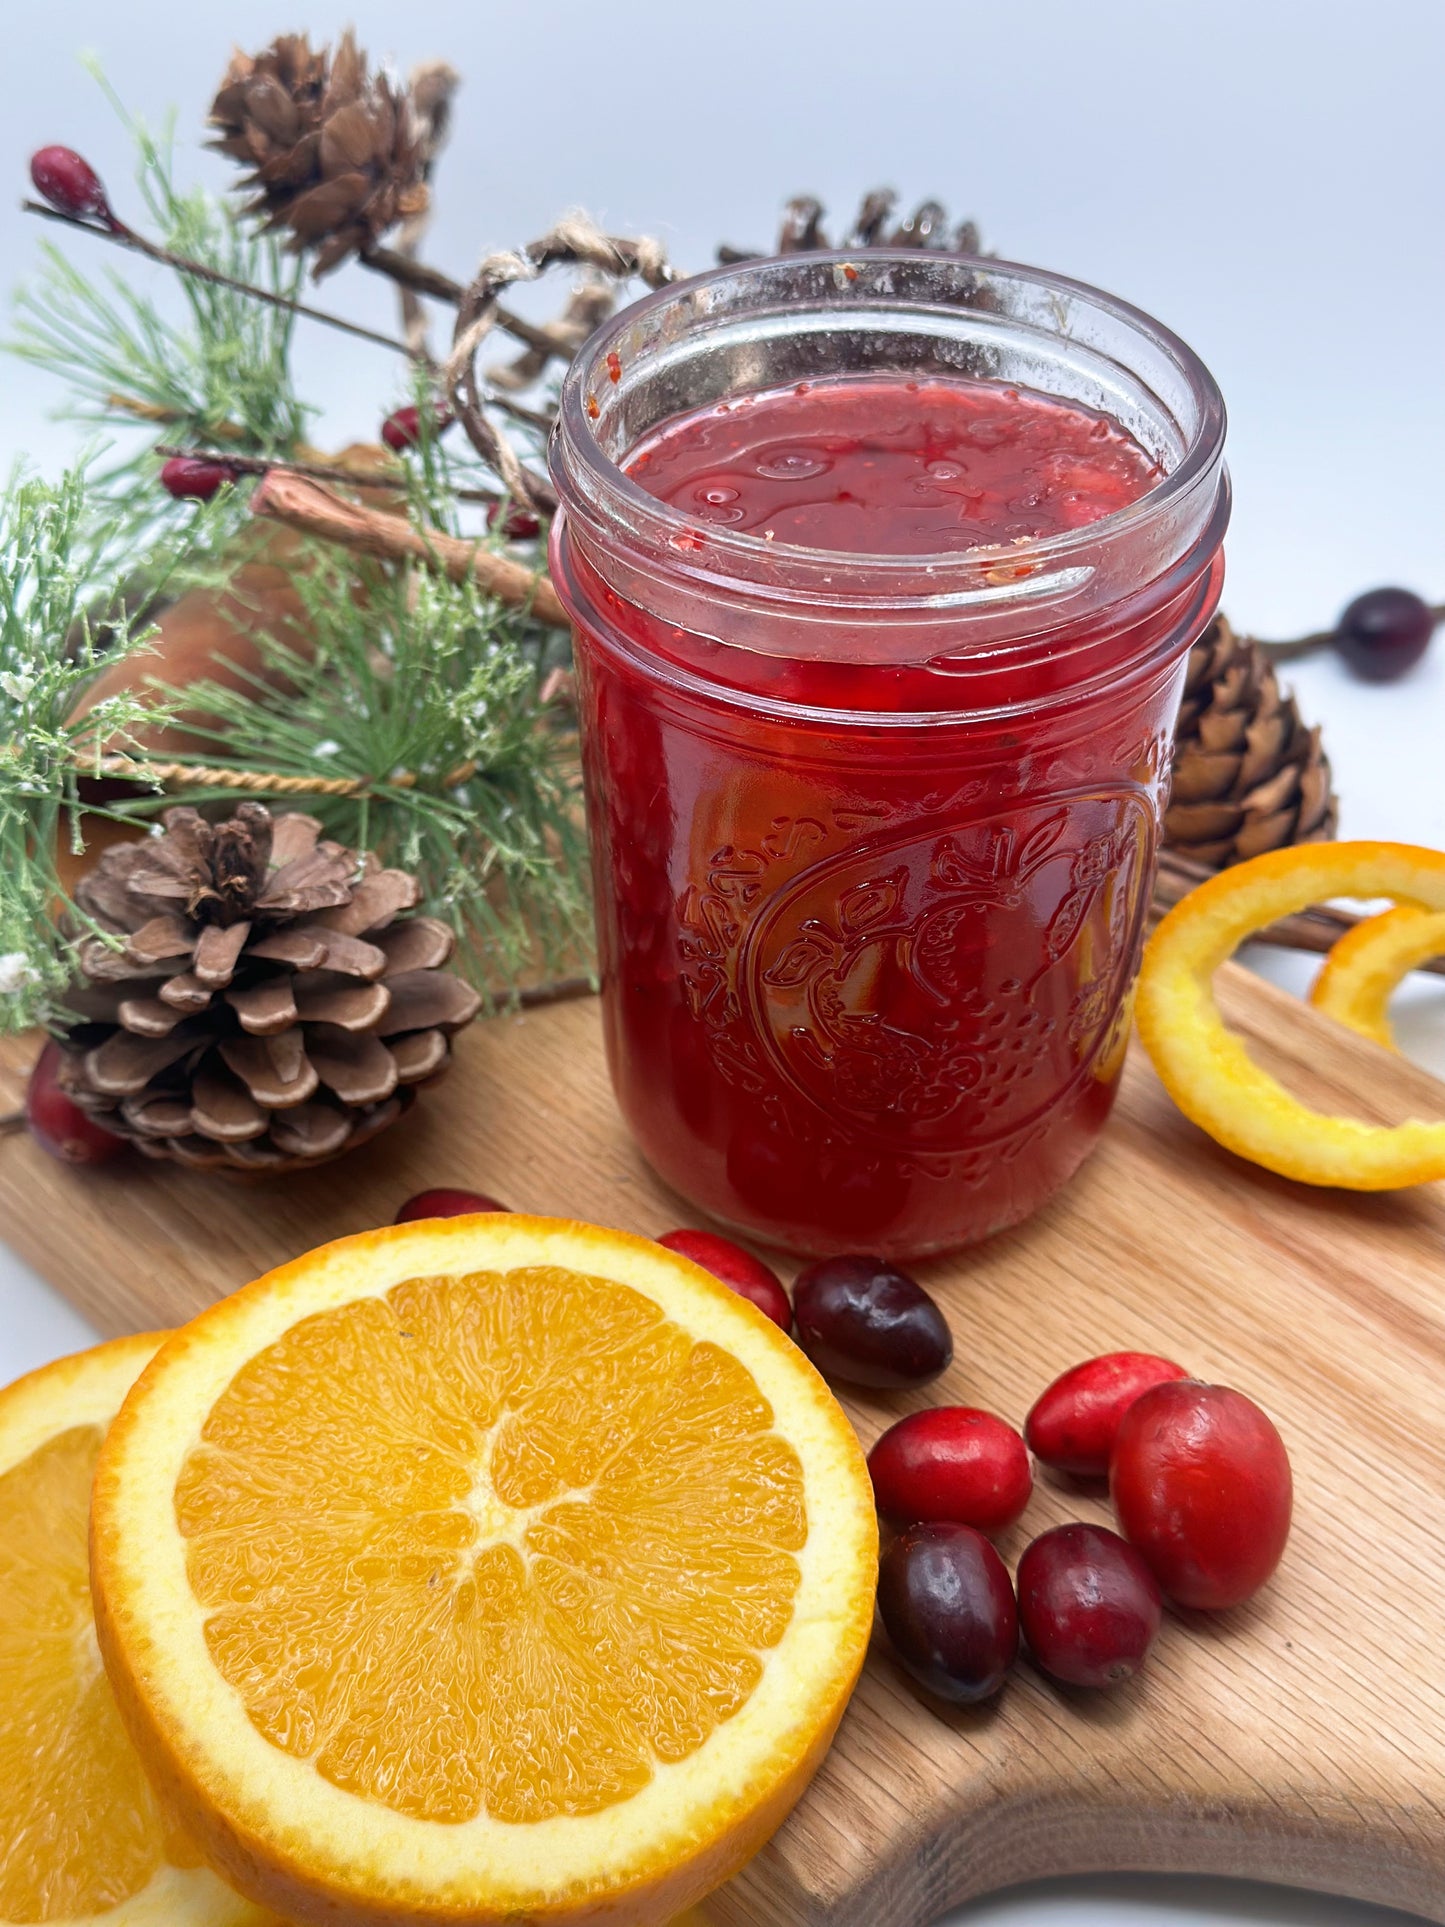 Cranberry Orange Jam: A Unique Tart and Citrus Blend